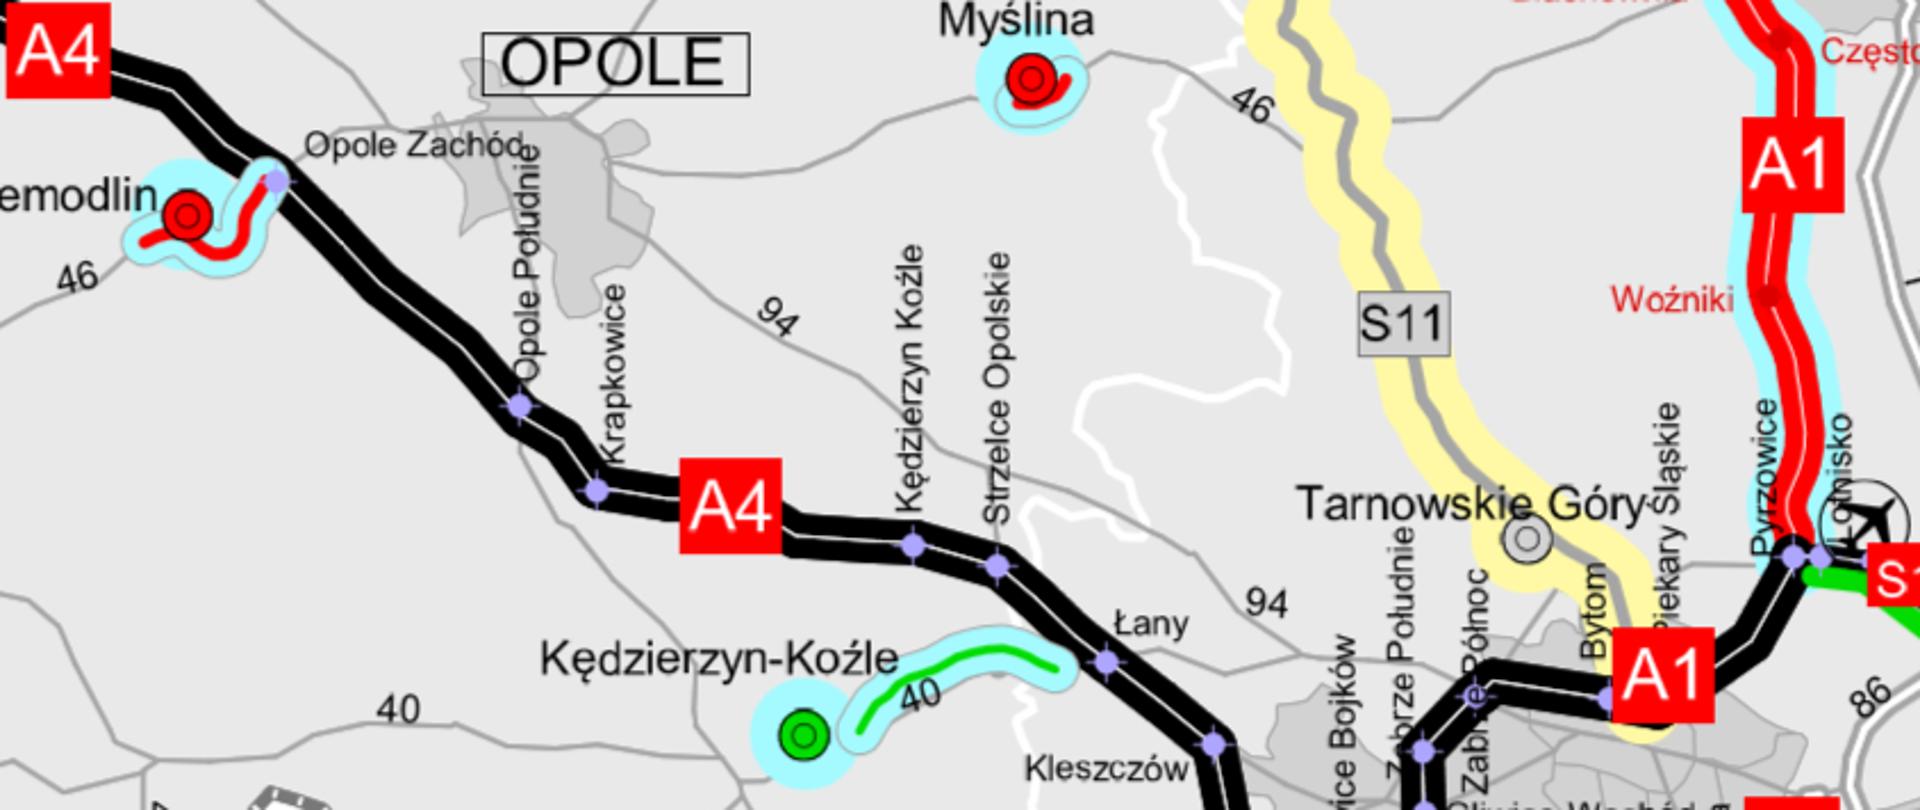 Mapa północnej obwodnicy Kędzierzyn - Koźle